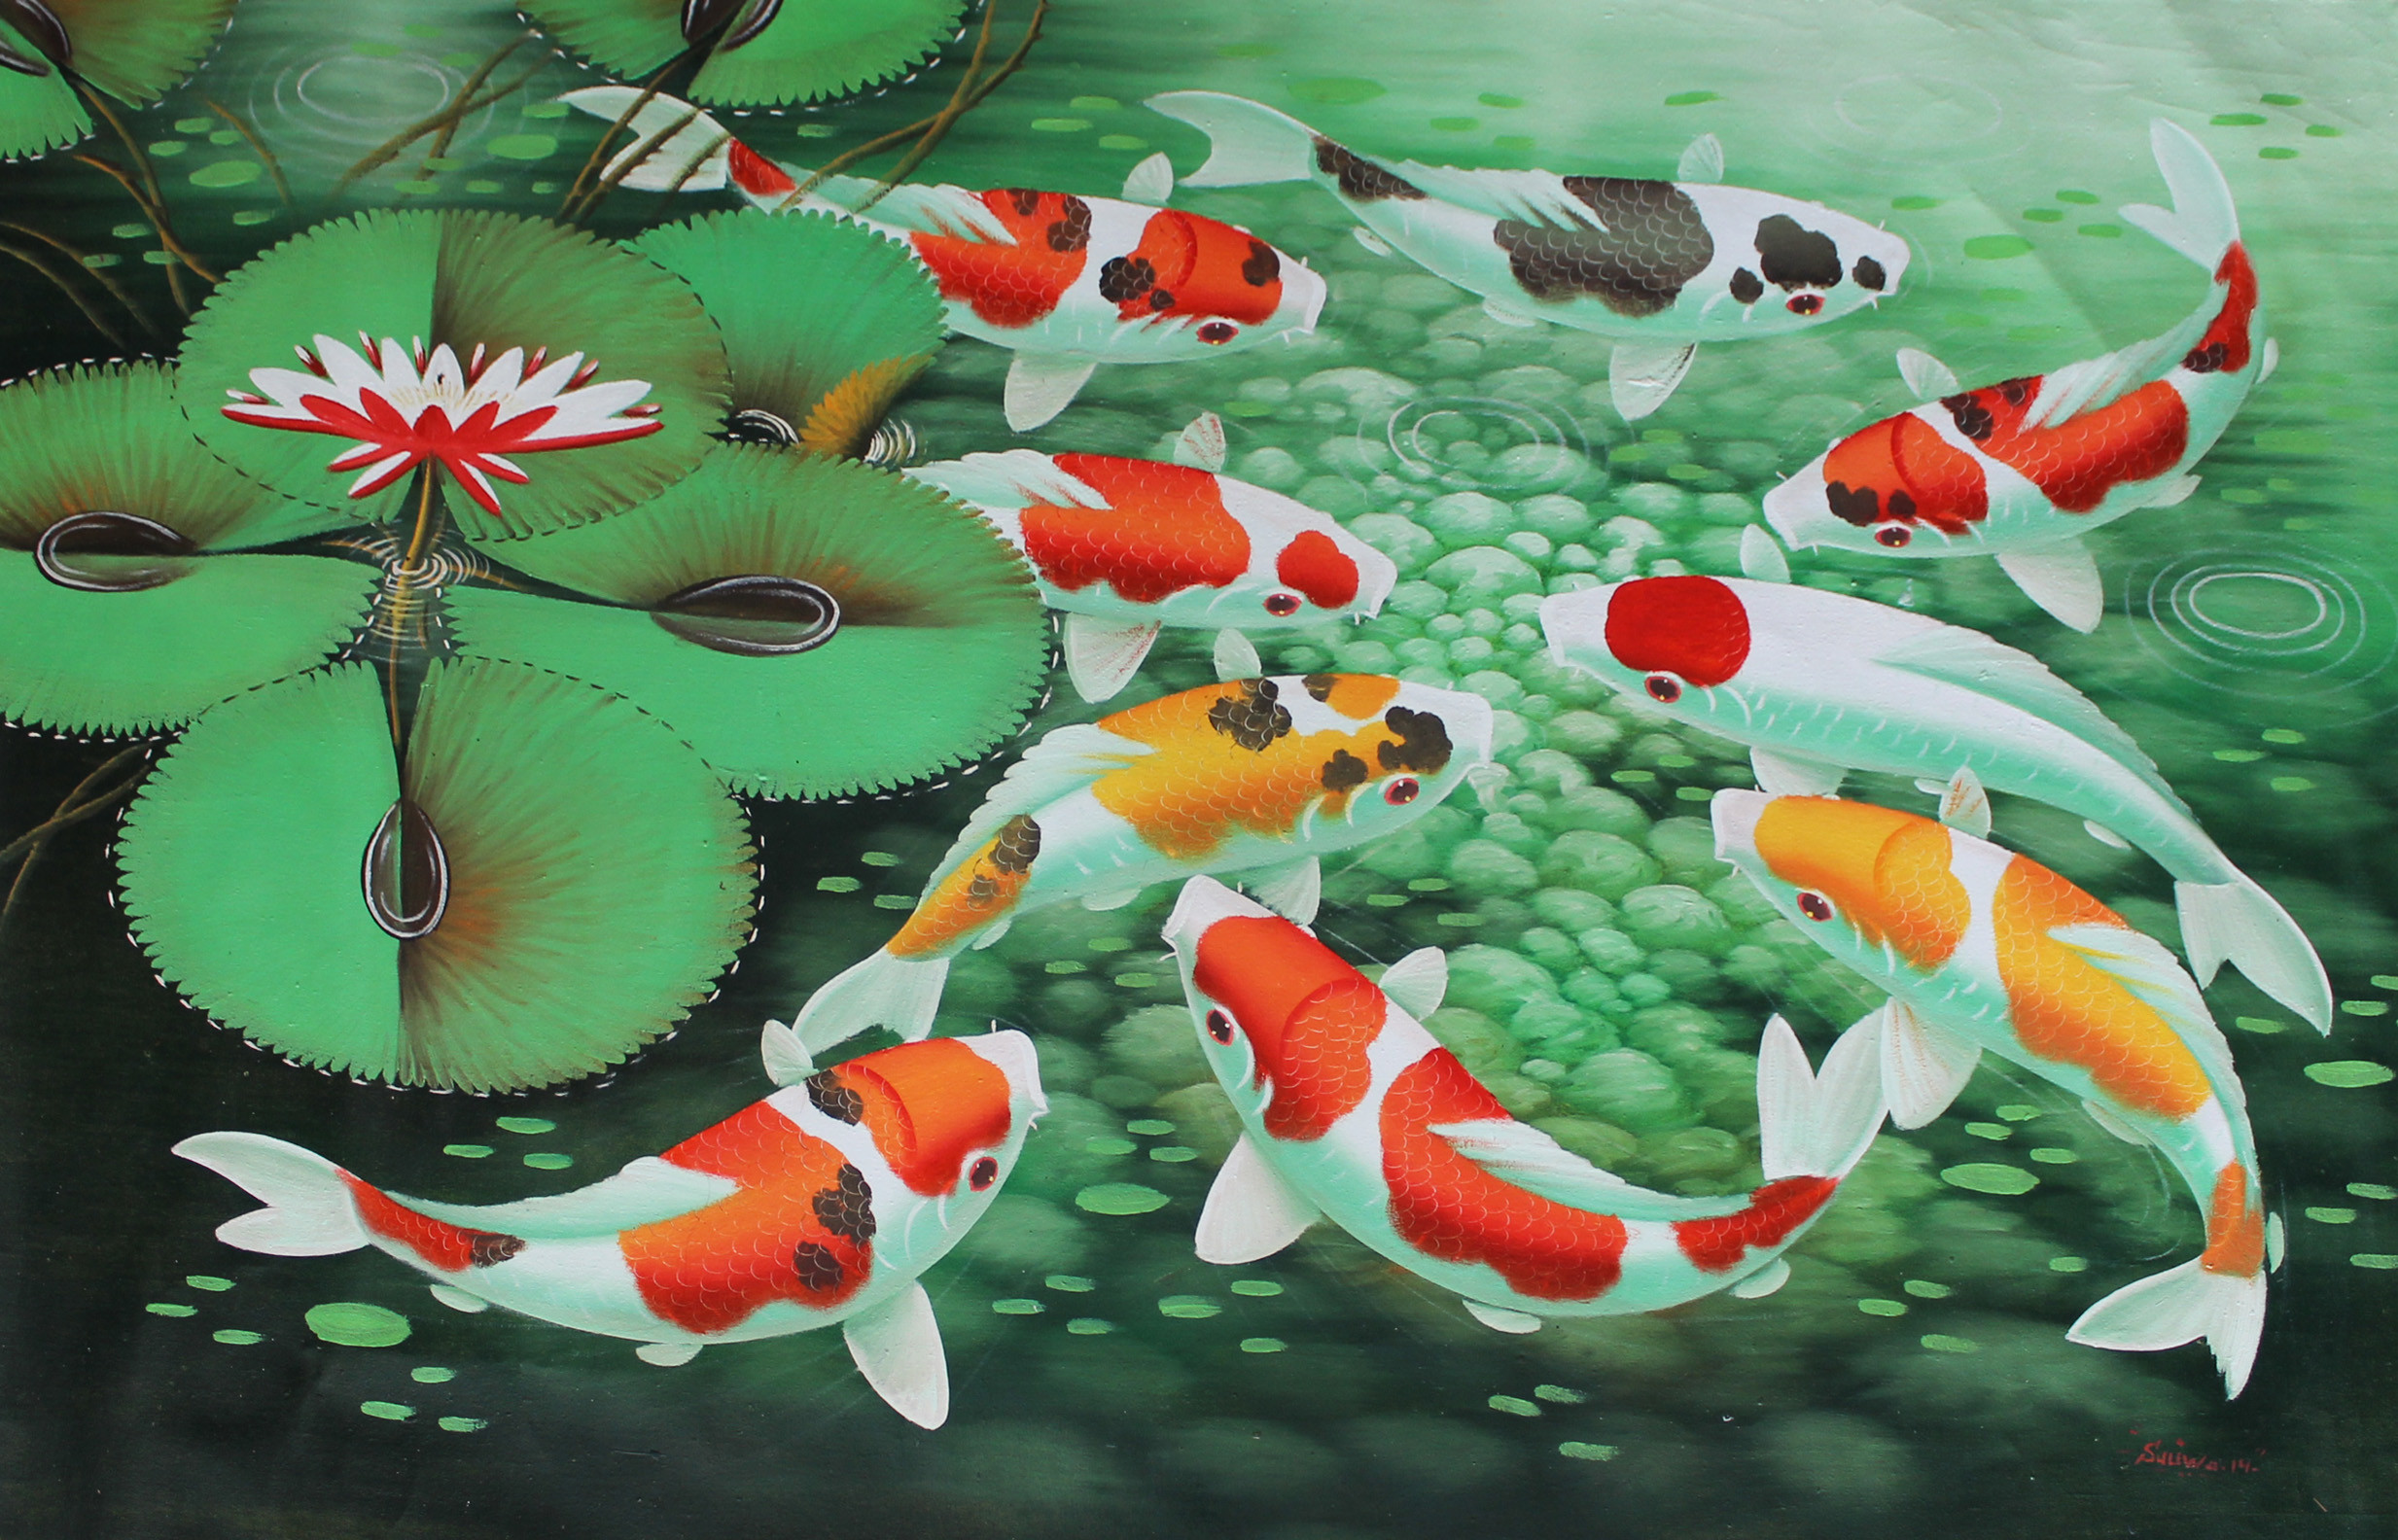 2466x1584 Koi Fish Wallpapers - Wallpaper Cave Koi Live Wallpaper for PC -  WallpaperSafari ...